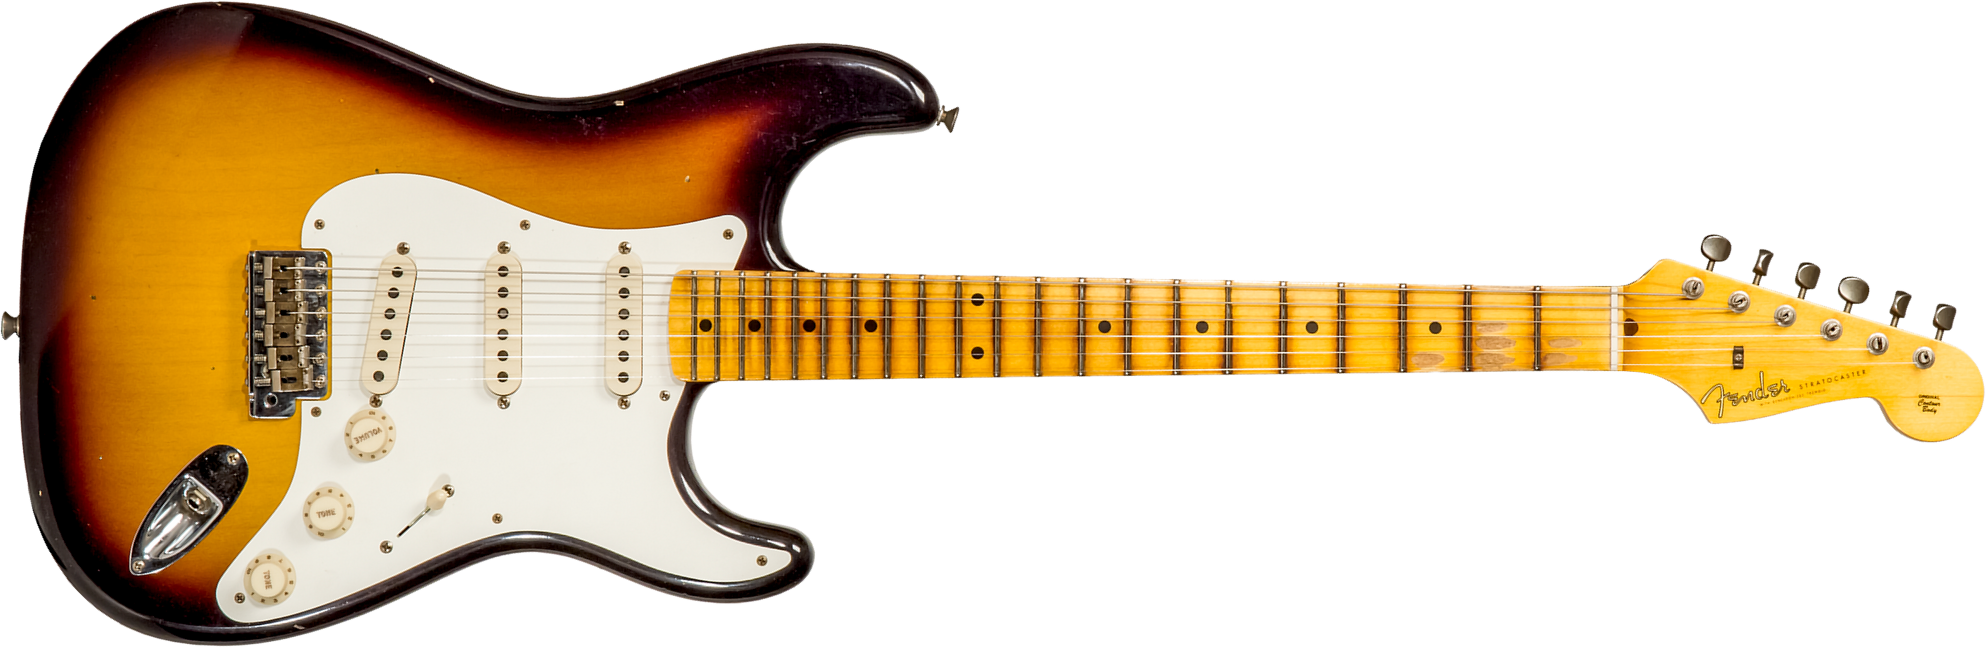 Fender Custom Shop Strat 1956 3s Trem Mn #cz570281 - Journeyman Relic Aged 2-color Sunburst - Str shape electric guitar - Main picture